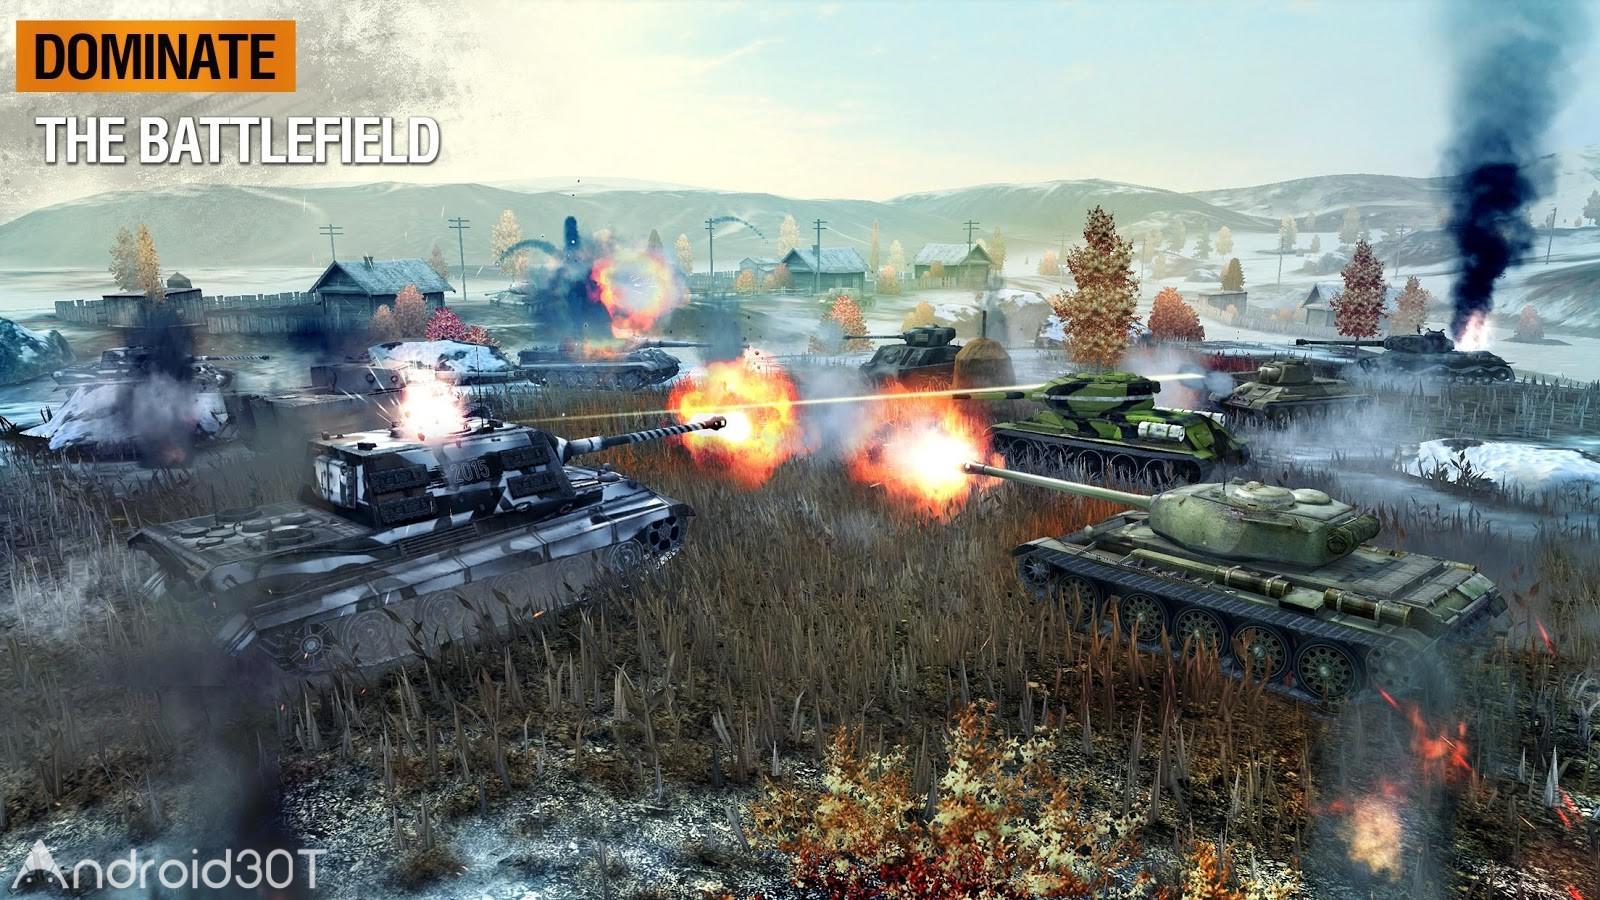 دانلود World of Tanks Blitz 9.0.0.1046 – دانلود بازی جهان نبرد تانک ها اندروید